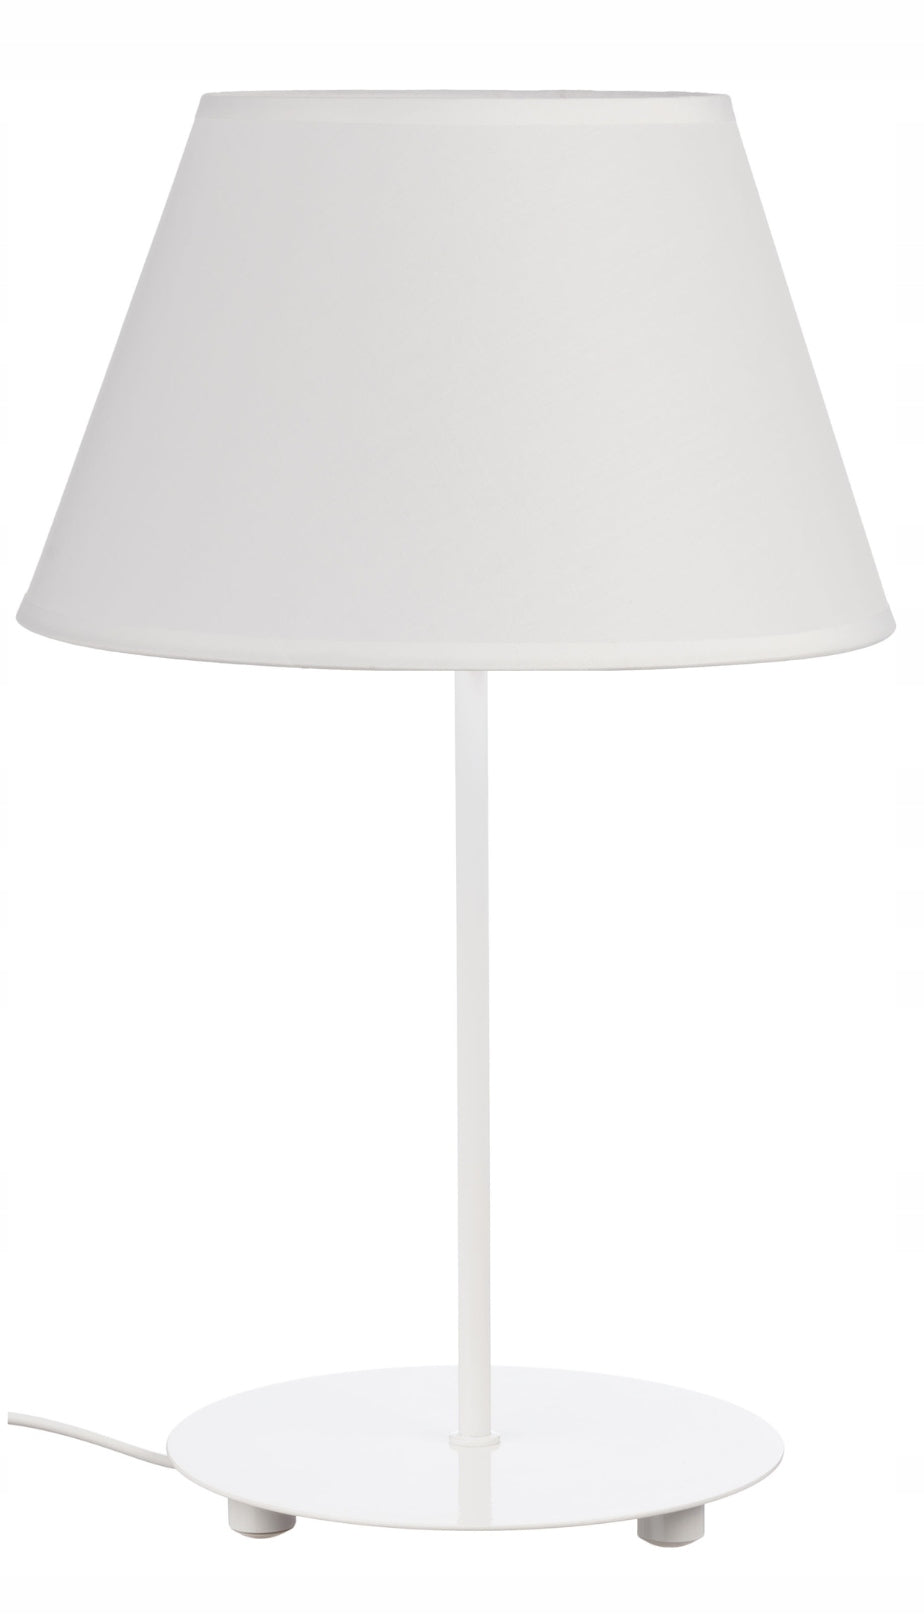 Hvit Bordlampe med Kjegleformet Skjerm i Hvit Karo E27